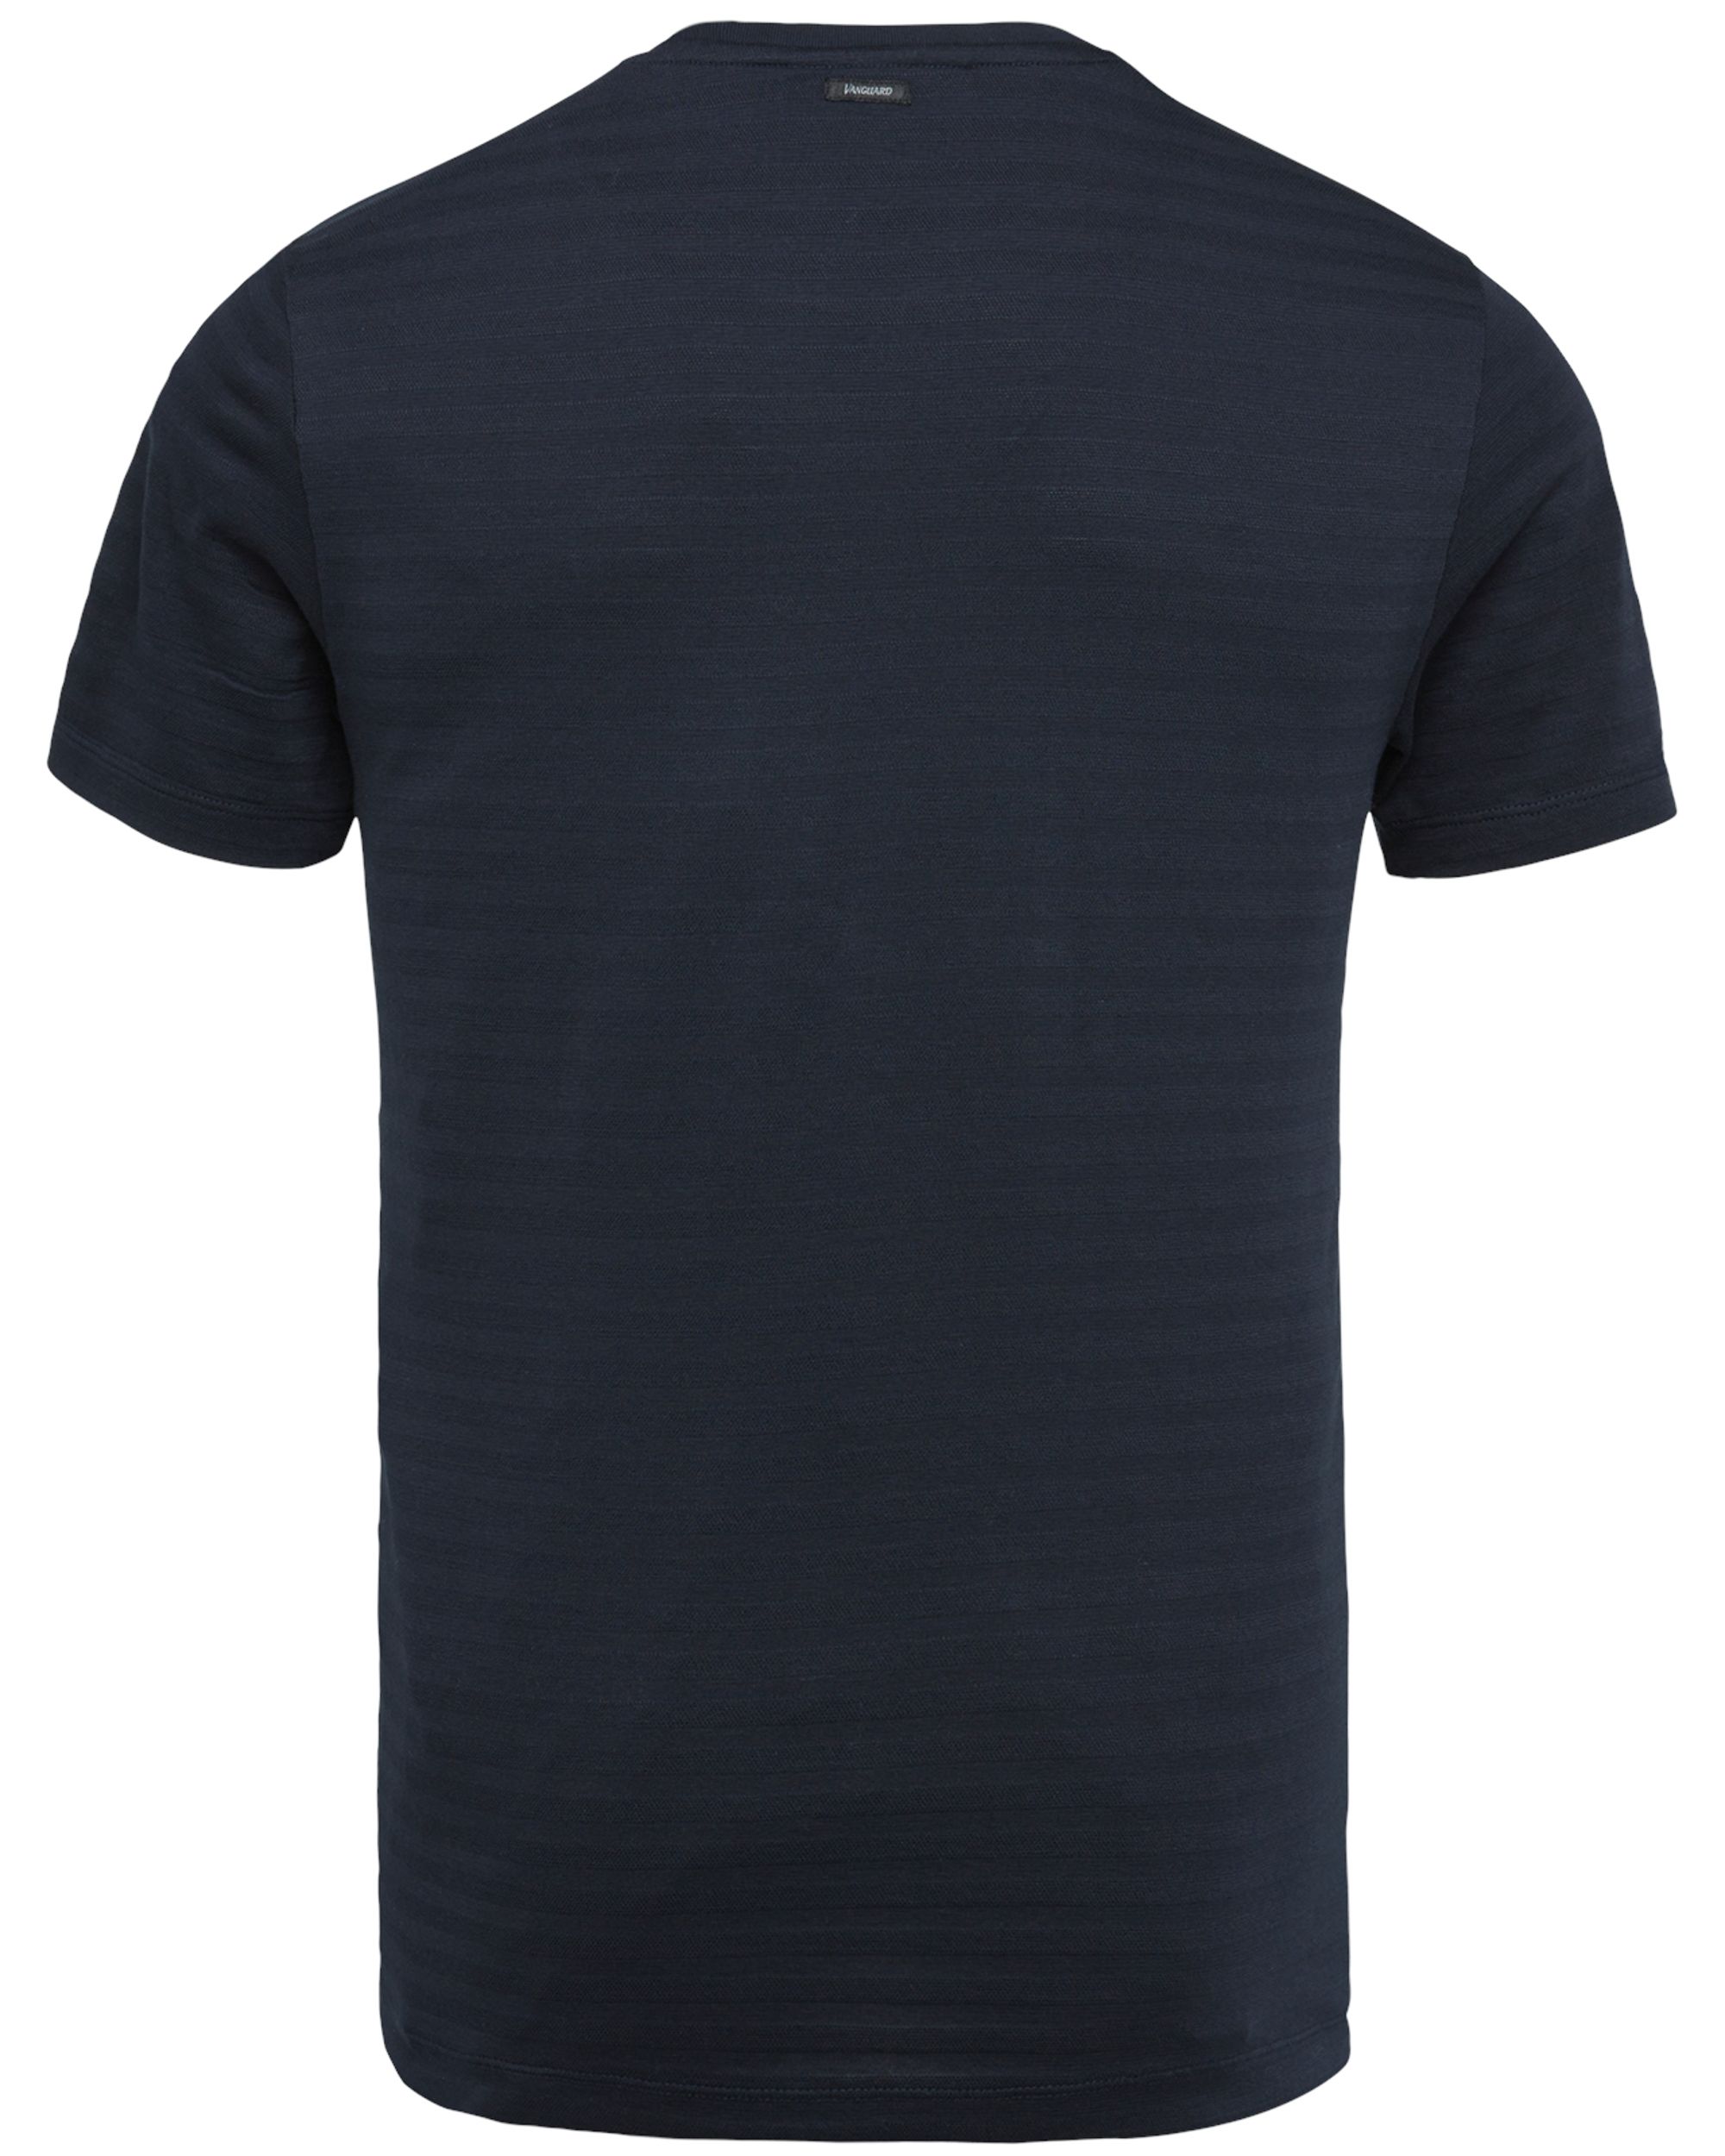 Vanguard T-shirt KM Blauw 082045-001-L